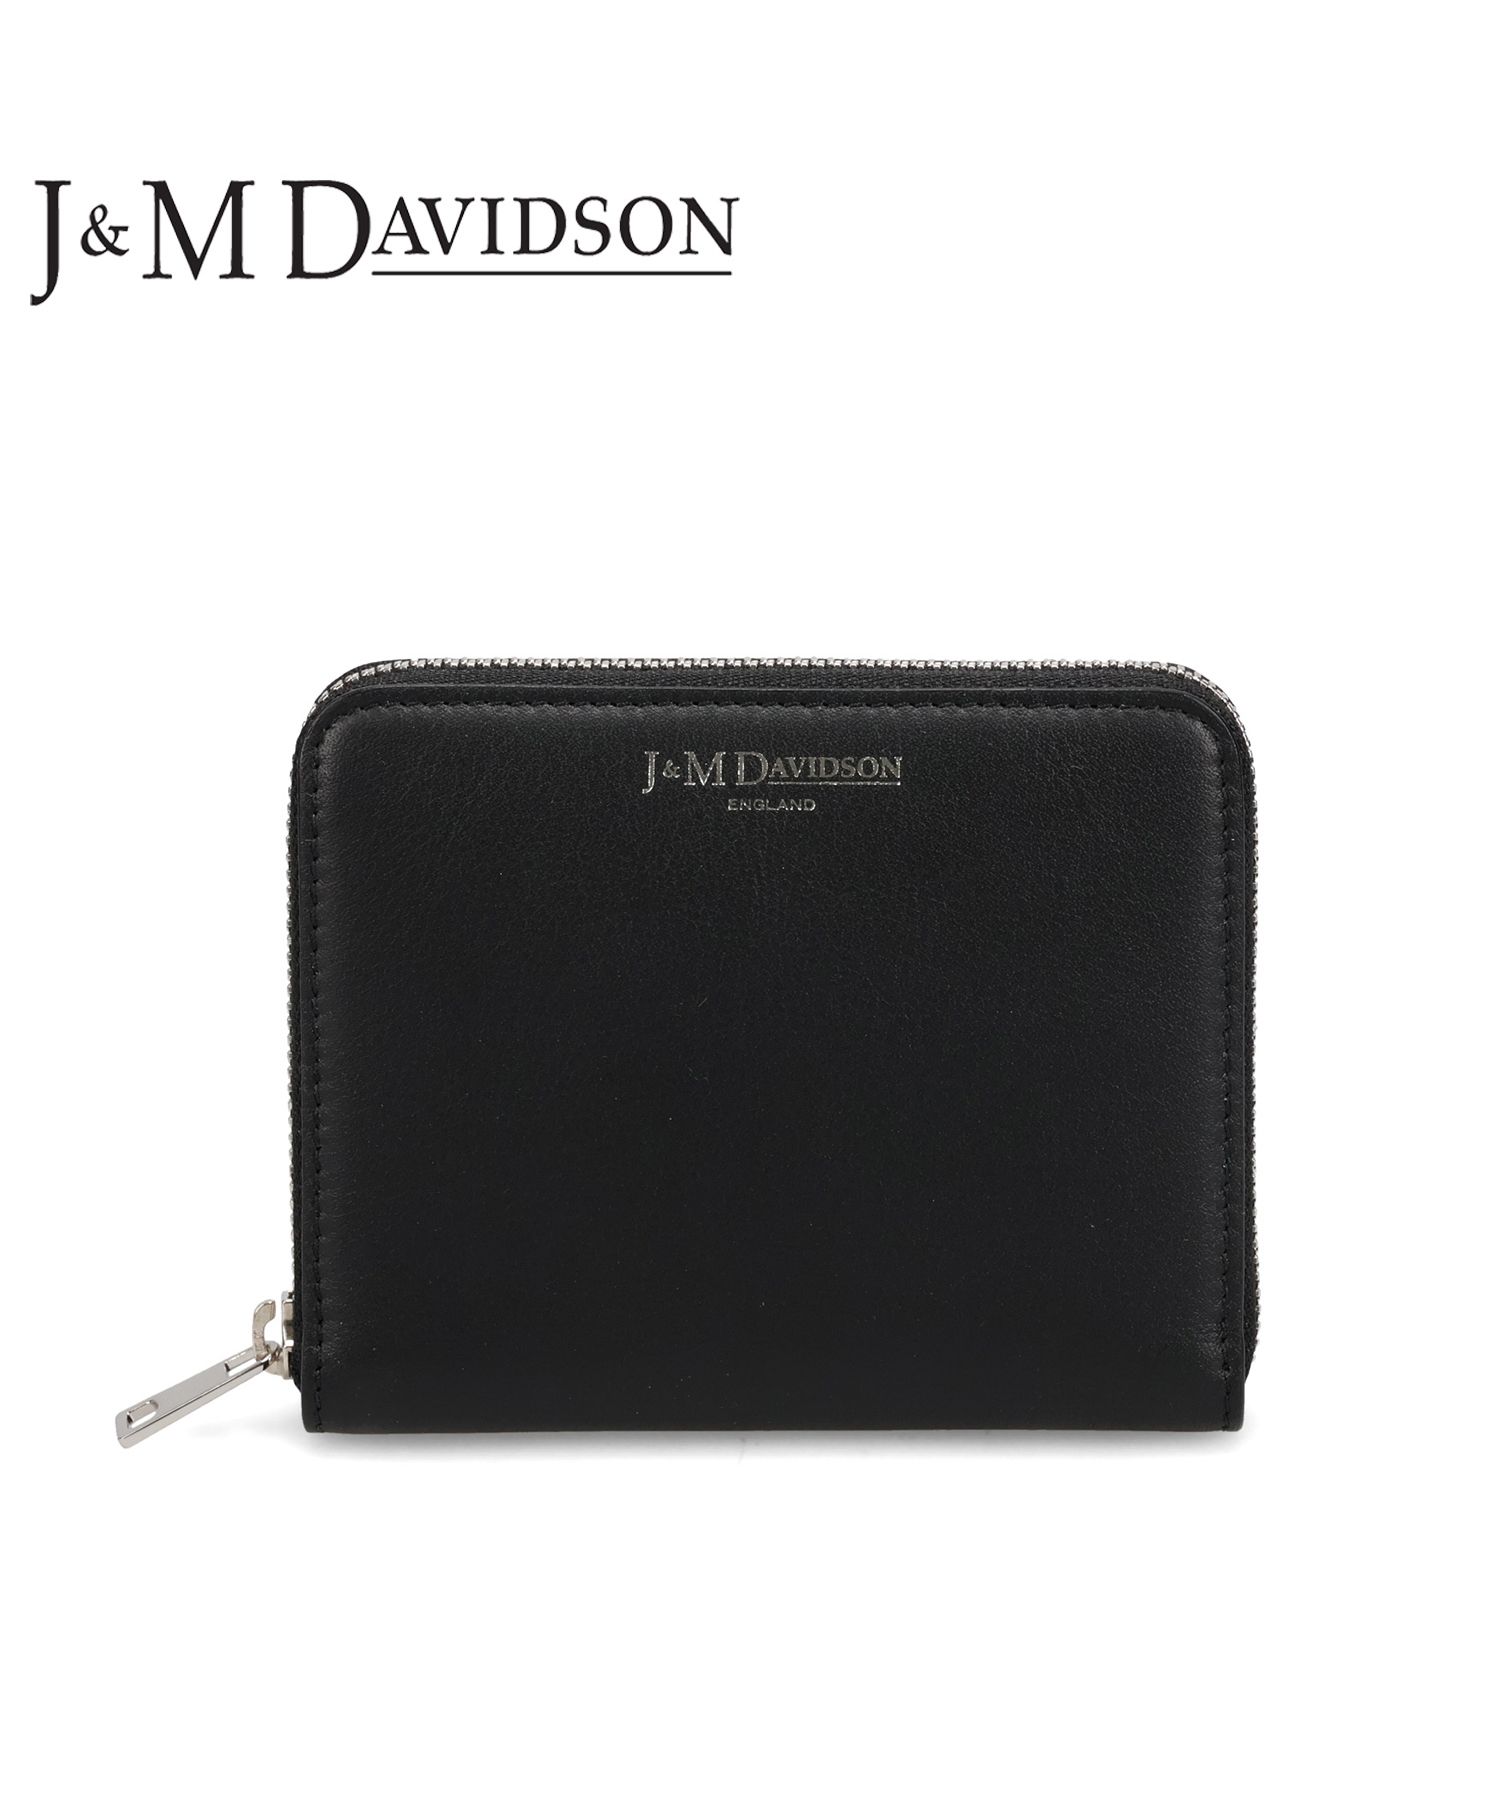 J&M DAVIDSON ジェイアンドエムデヴィッドソン 財布 ミニ財布 スモール ジップ ウォレット メンズ レディース ラウンドファスナー  SMALL Z